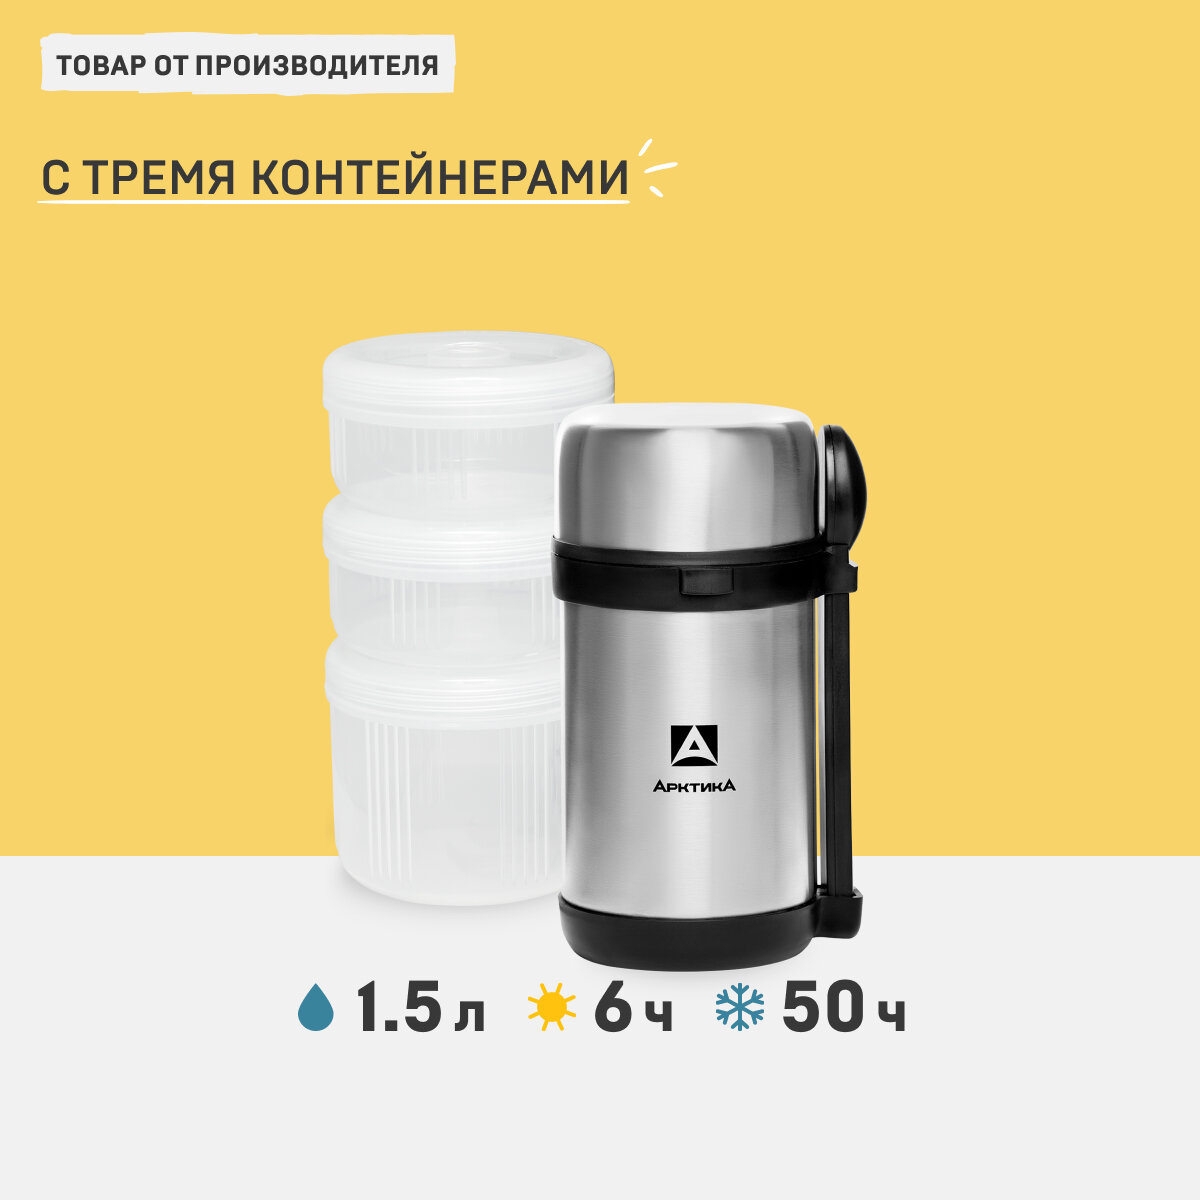 Термос для еды Арктика 403-1500 серебристый 1,5 литров вакуумный с тремя контейнерами, столовыми приборами (ложка, вилка) и ремешком в комплекте